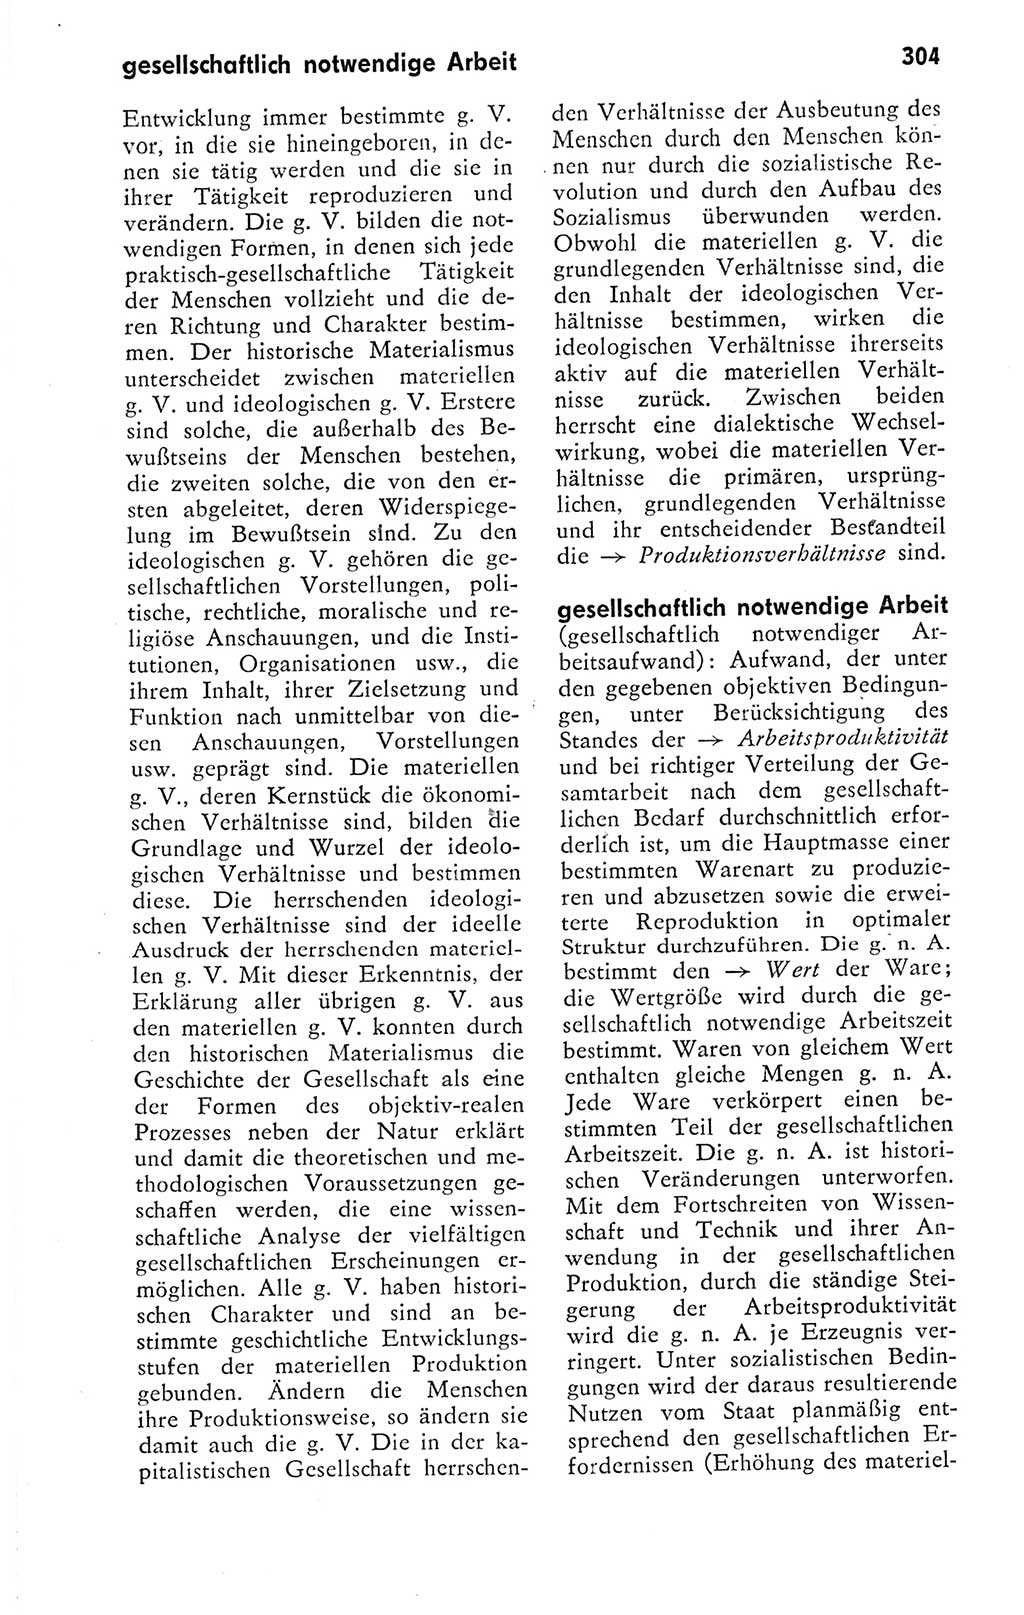 Kleines politisches Wörterbuch [Deutsche Demokratische Republik (DDR)] 1978, Seite 304 (Kl. pol. Wb. DDR 1978, S. 304)